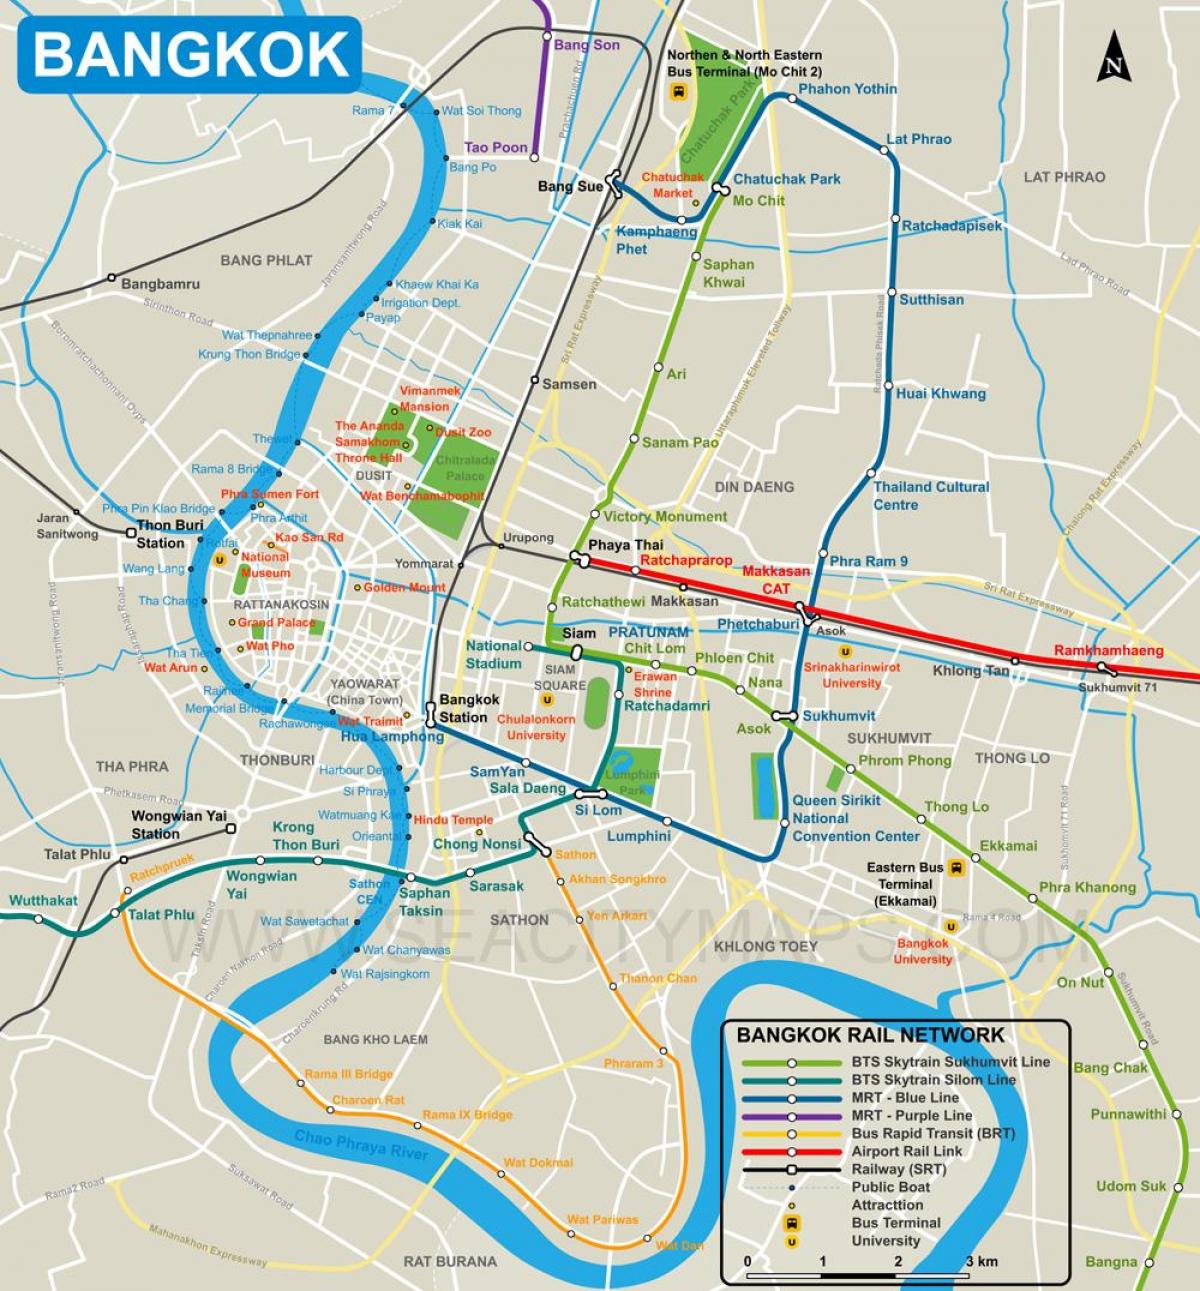 kort af bangkok city center